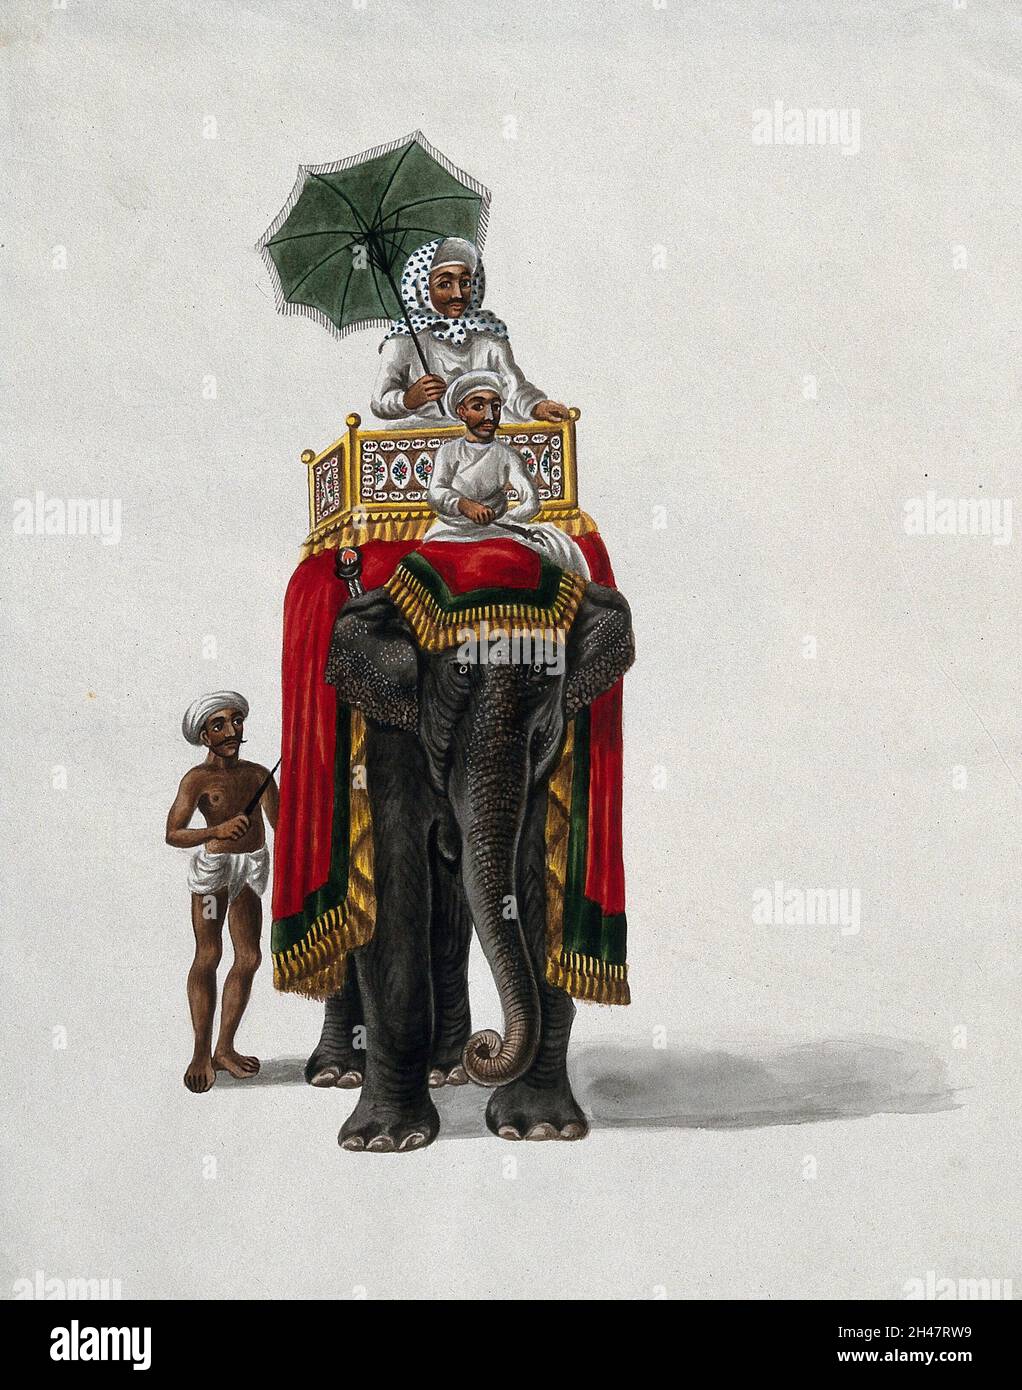 Un homme riche, tenant un parapluie, assis sur un howdah (siège) placé sur le dos d'un éléphant indien drapé de tapis.Peinture de gouache par un artiste indien. Banque D'Images